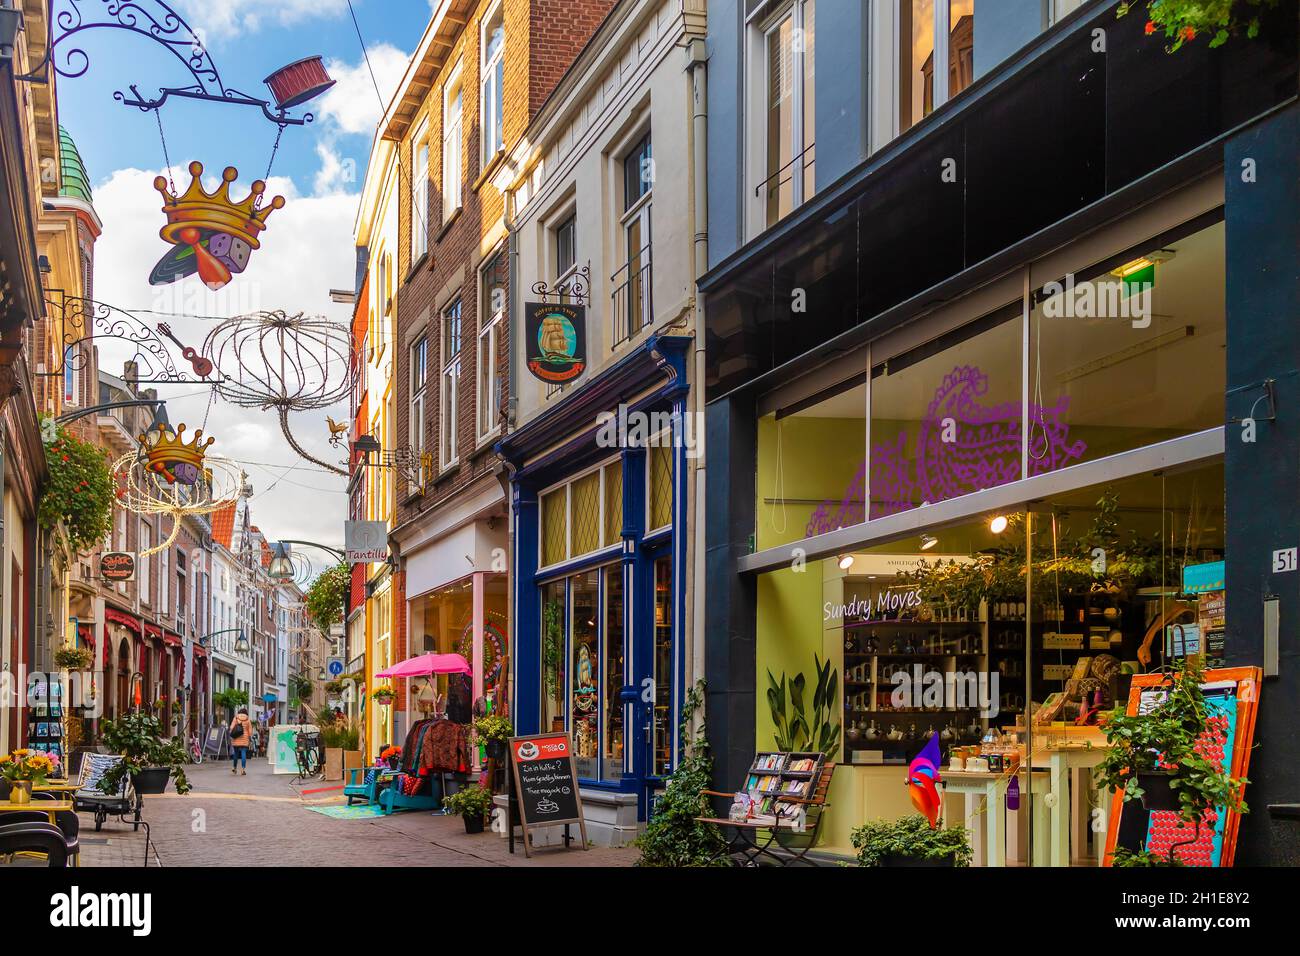 Deventer, pays-Bas - 29 octobre 2019 : rue commerçante colorée avec décoration de noël dans l'ancien centre-ville de Deventer, pays-Bas Banque D'Images